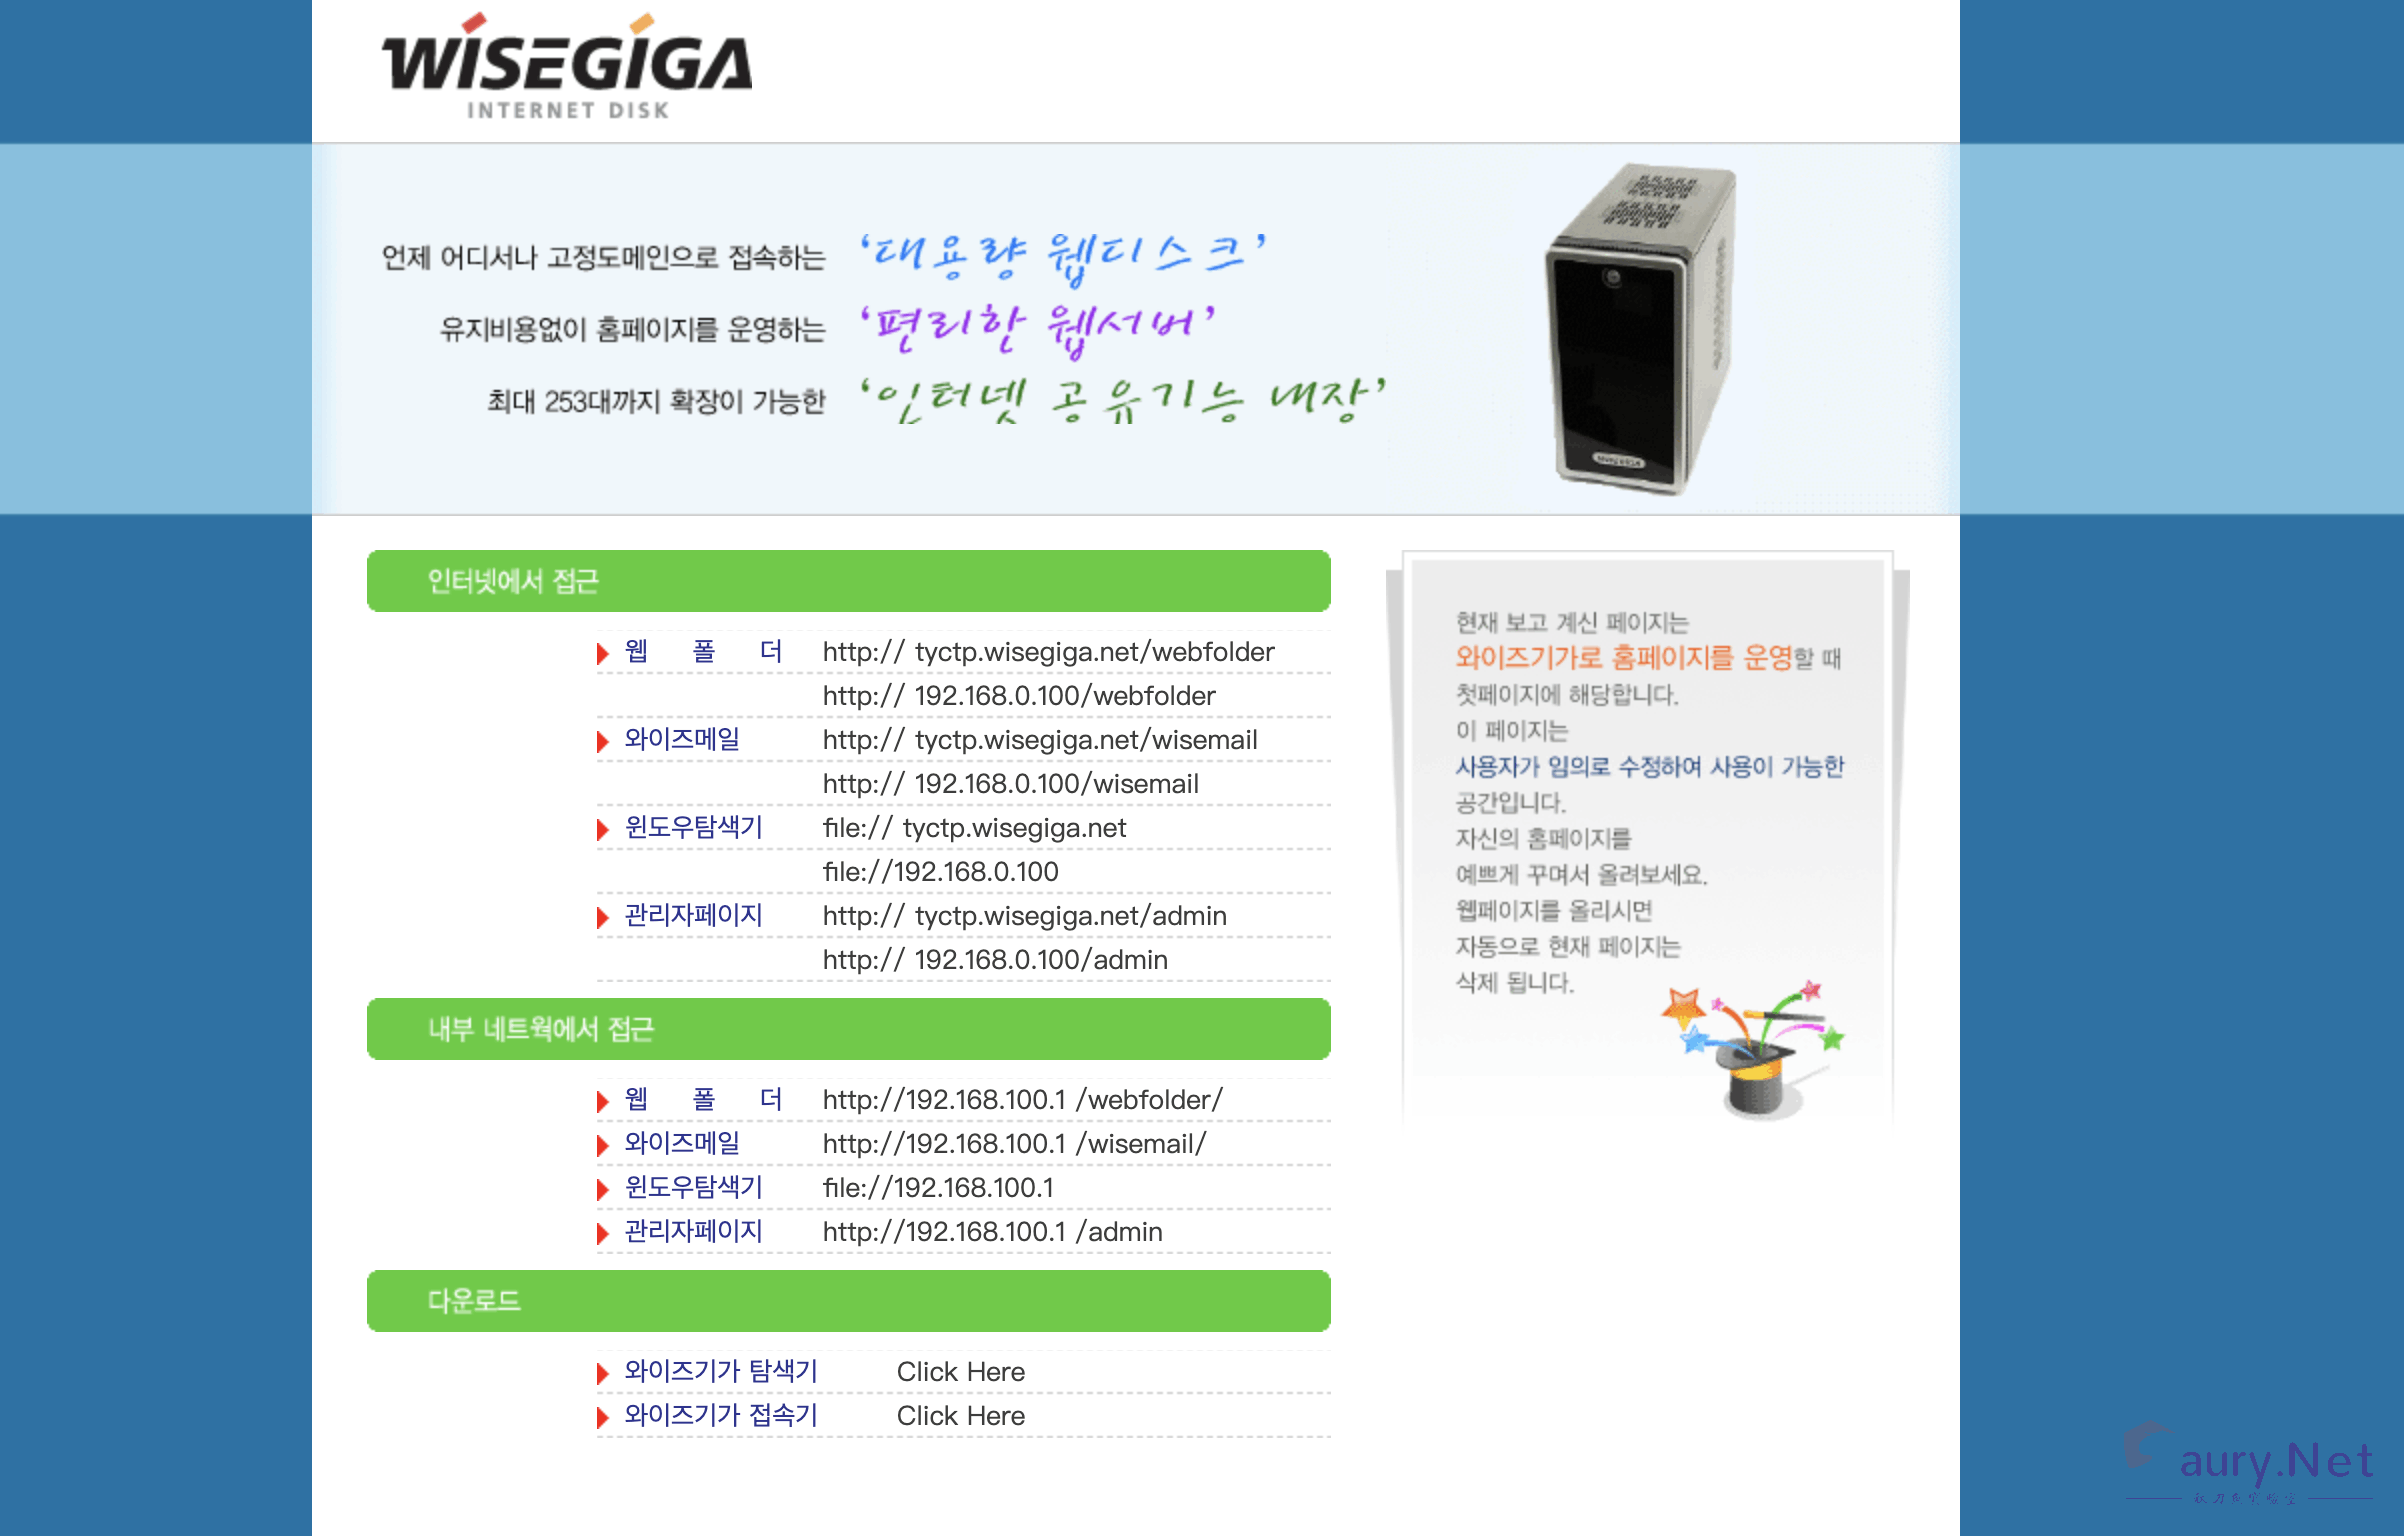 WiseGiga NAS down_data.php 任意文件下载漏洞-秋刀鱼实验室